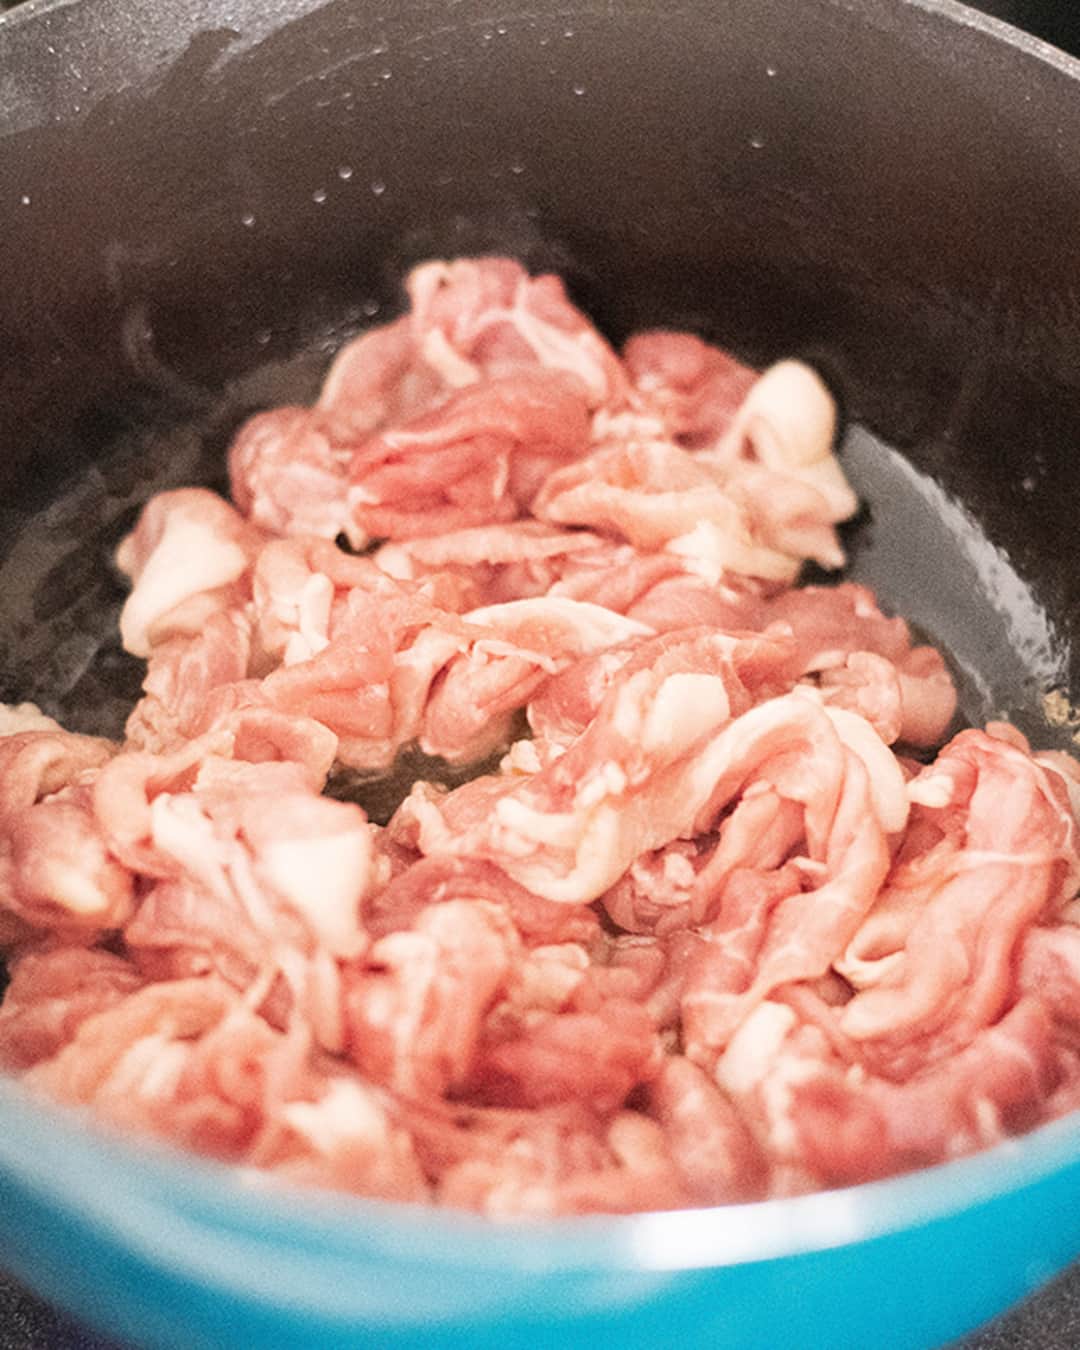 おうちごはん編集部さんのインスタグラム写真 - (おうちごはん編集部Instagram)「【具だくさんの旨味たっぷり豚汁】#レシピ あり▼  秋の味覚がたっぷりとつまった具だくさんの豚汁レシピ✨  これからの寒くなる時季のあったかい料理って最高ですよね😚 秋冬の旬の食材をたっぷりと使った具だくさんの豚汁をみんなで食べれば、心も身体も温まること間違いなし🎵  --------👇レシピ👇---------  具だくさんの旨味たっぷり豚汁  ▼材料（6～8人前） ※3～4人だと、おかわりできちゃうボリューム感です  ・豚切り落とし肉……400g ・大根……1/2本 ・人参……1本 ・さつまいも……2本 ・ひらたけ……1パック ・まいたけ……1パック ・玉こんにゃく……1パック ・玉ねぎ……1個 ・ごぼう……1本  ・ごま油……大さじ3 ・合わせ味噌……大さじ3〜4 ・だしの素……小さじ3 ・酒……100ml ・みりん……100ml ・水……400〜500ml ・塩……適量 ・しょうゆ……大さじ1  ▼下準備  ・豚肉と野菜を食べやすい大きさにカットしておく。  ▼作り方  1. フライパンにごま油をしき、豚肉・たまねぎ・ごぼうを入れて塩を振り、中火で5分ほど炒める。  2. 水300ml、みりん、酒、合わせ味噌大さじ1、だしの素小さじ3を入れ、5分ほど煮る。  3. 残りの野菜と玉こんにゃくを入れたら、残りの水を入れて弱火で25分煮る。 （具材がたっぷりなので、水が少ないなと感じたら具材がひたひたになるくらいまで水を入れてください）  4. 仕上げに、合わせ味噌（大さじ2）と醤油（大さじ1）を加えて味を調整する。  --💡POINT💡--  ●最初に豚肉、玉ねぎ、ごぼうを炒めて煮る！ まず最初に、豚肉、玉ねぎ、ごぼうを一緒に炒め、調味料と合わせて5分ほど煮ます。この工程によって豚肉の臭みが消えるのと同時に、豚汁全体に一体感が出ます！  ●さつまいもは絶対に入れよう！ さつまいもを入れることで、甘みととろっとした粘度が増すので、格段に美味しい豚汁に仕上がります！  ●具材はたっぷり使って！ たくさんの具材を使って、たっぷりの量を作ることで、食材の旨味が凝縮されます。 少ない量を作るより、たっぷりと作った方が仕上がりが格段に美味しいので、作るときにはぜひたっぷり作ってみてくださいね。  photo by @ouchigohan_ojisan  🔽「具だくさんの旨味たっぷり豚汁」のレシピは、おうちごはんの記事でもご紹介しています！ https://ouchi-gohan.jp/2447/  ------------------ ◆このレシピを作ってみたいと思った方は「保存📄」を、おいしそうと思った方はぜひ「いいね♥」してね😚  ◆ #おうちごはんLover を付けて投稿するとおうちごはんの記事やこのアカウント、おうちごはん発信のトレンドリリースなどでご紹介させていただくことがございます。スタッフが毎日楽しくチェックしています♪ ------------------  #おうちごはんlover #おうちごはんラバー #ouchigohanlover #ouchigohan  #あしたのおうちごはん #おうちごはん #recipe #レシピ #soup #豚汁 #汁物 #スープ #味噌汁 #あったかレシピ #具だくさん #献立 #晩御飯 #鍋 #自炊 #秋野菜 #豚肉 #夕飯 #今日のごはん #手料理」10月29日 19時00分 - ouchigohan.jp